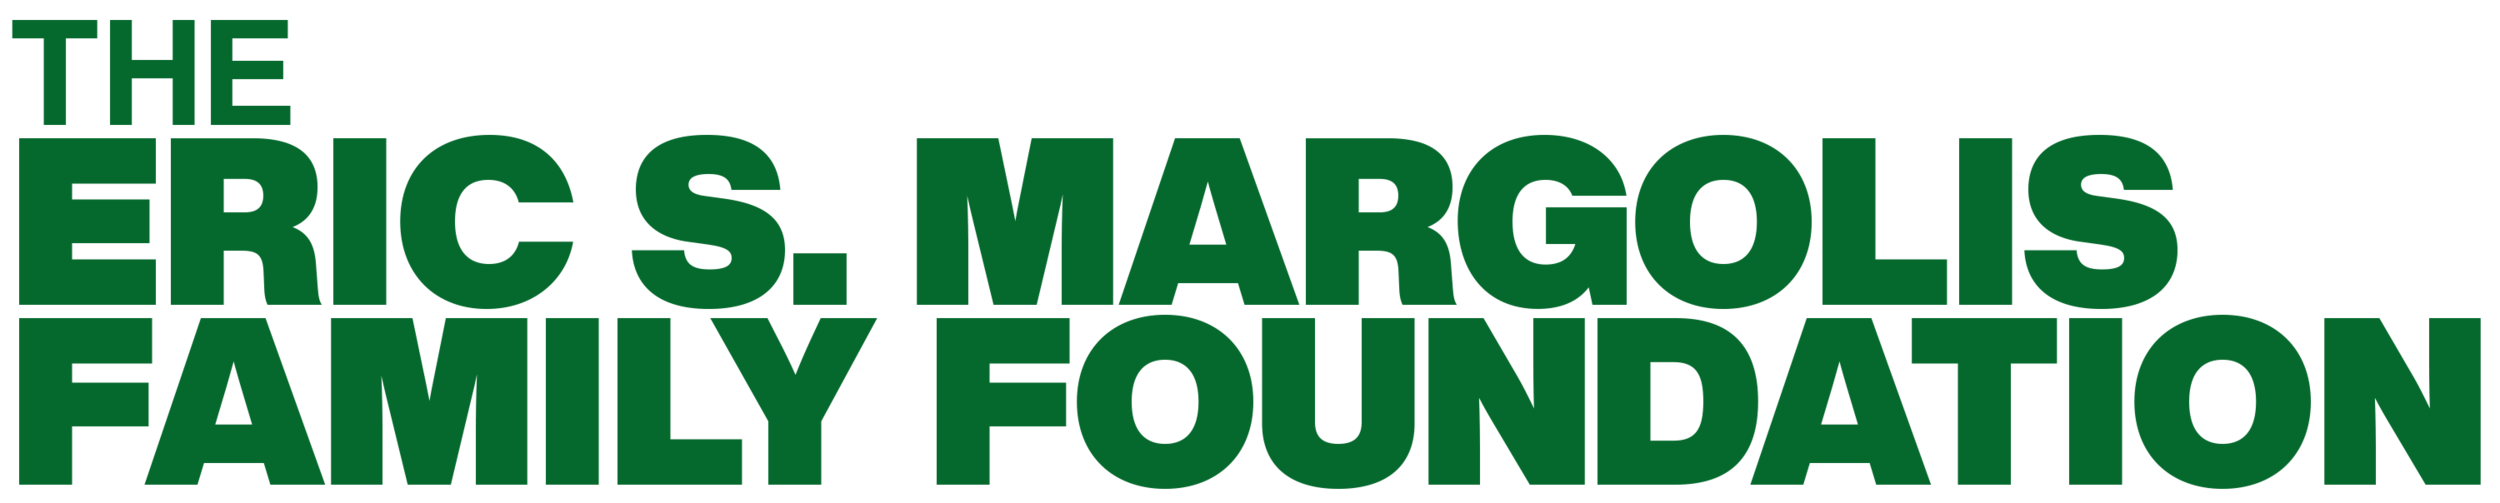 Eric S. Margolis Family Foundation